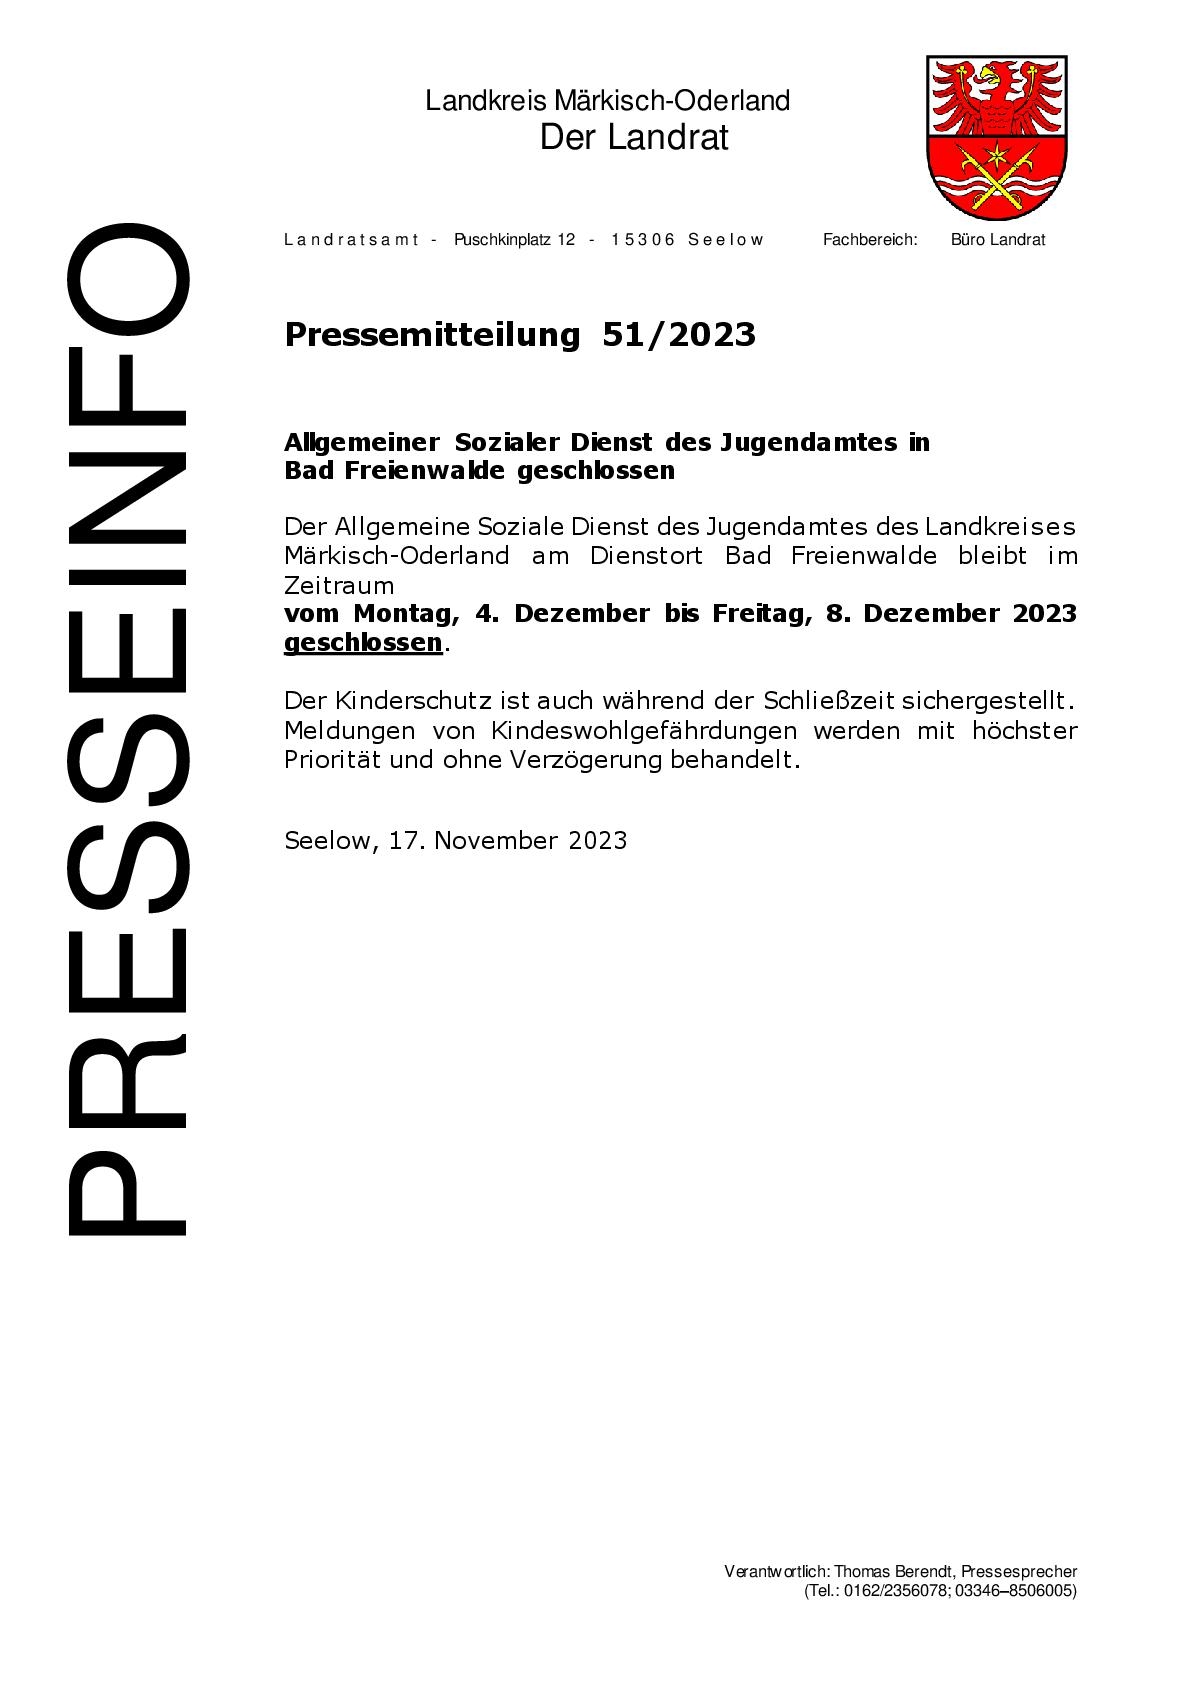 Pressemitteilung - 09.11.2023 - 512023 - Allgemeiner Sozialer Dienst des Jugendamtes in Bad Freienwa-001